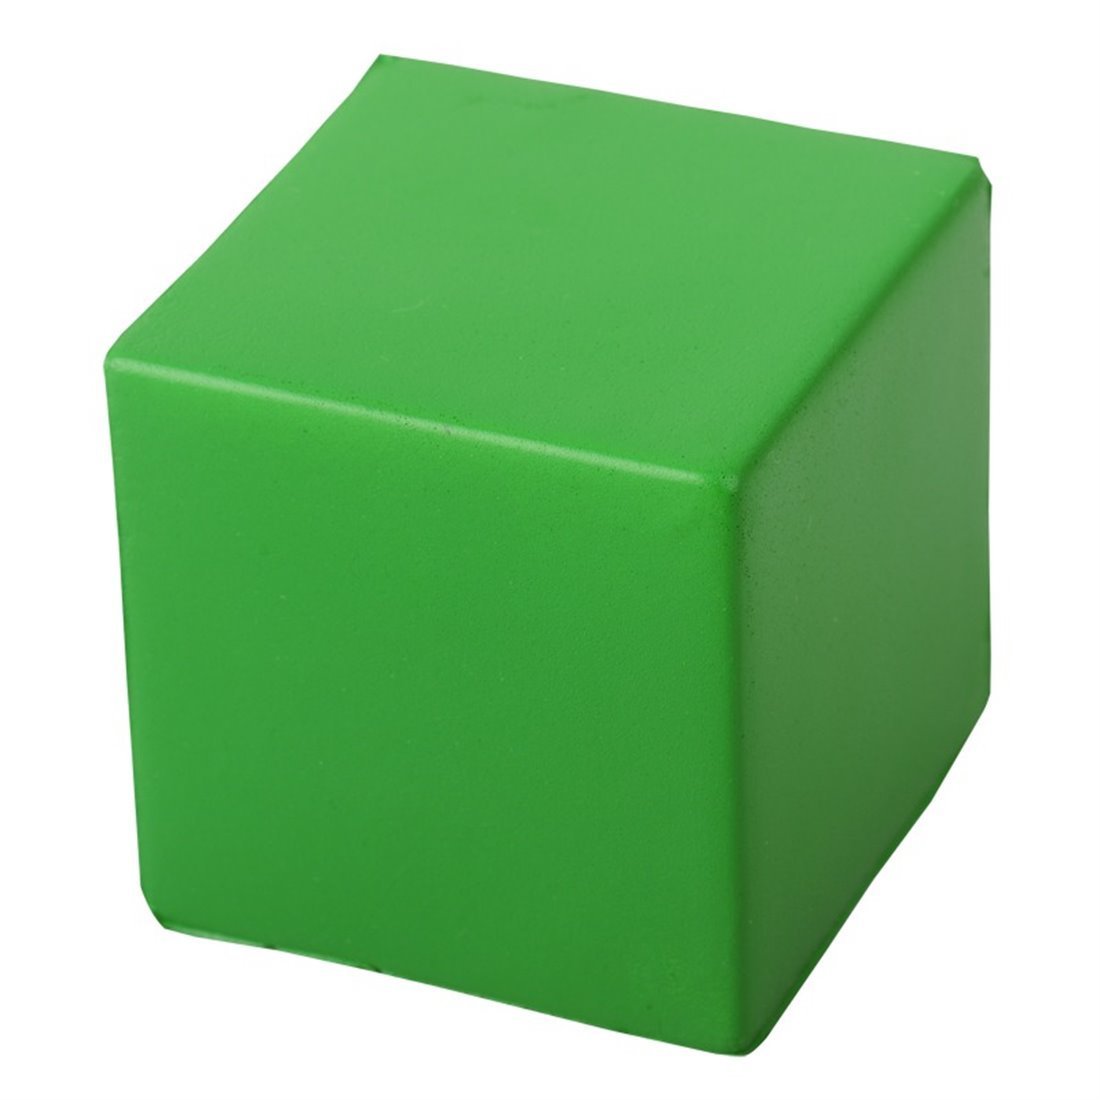 Reg kz. Зеленый кубик. Кубики пластмассовые. Кубики для детей. Кубик пластиковый.